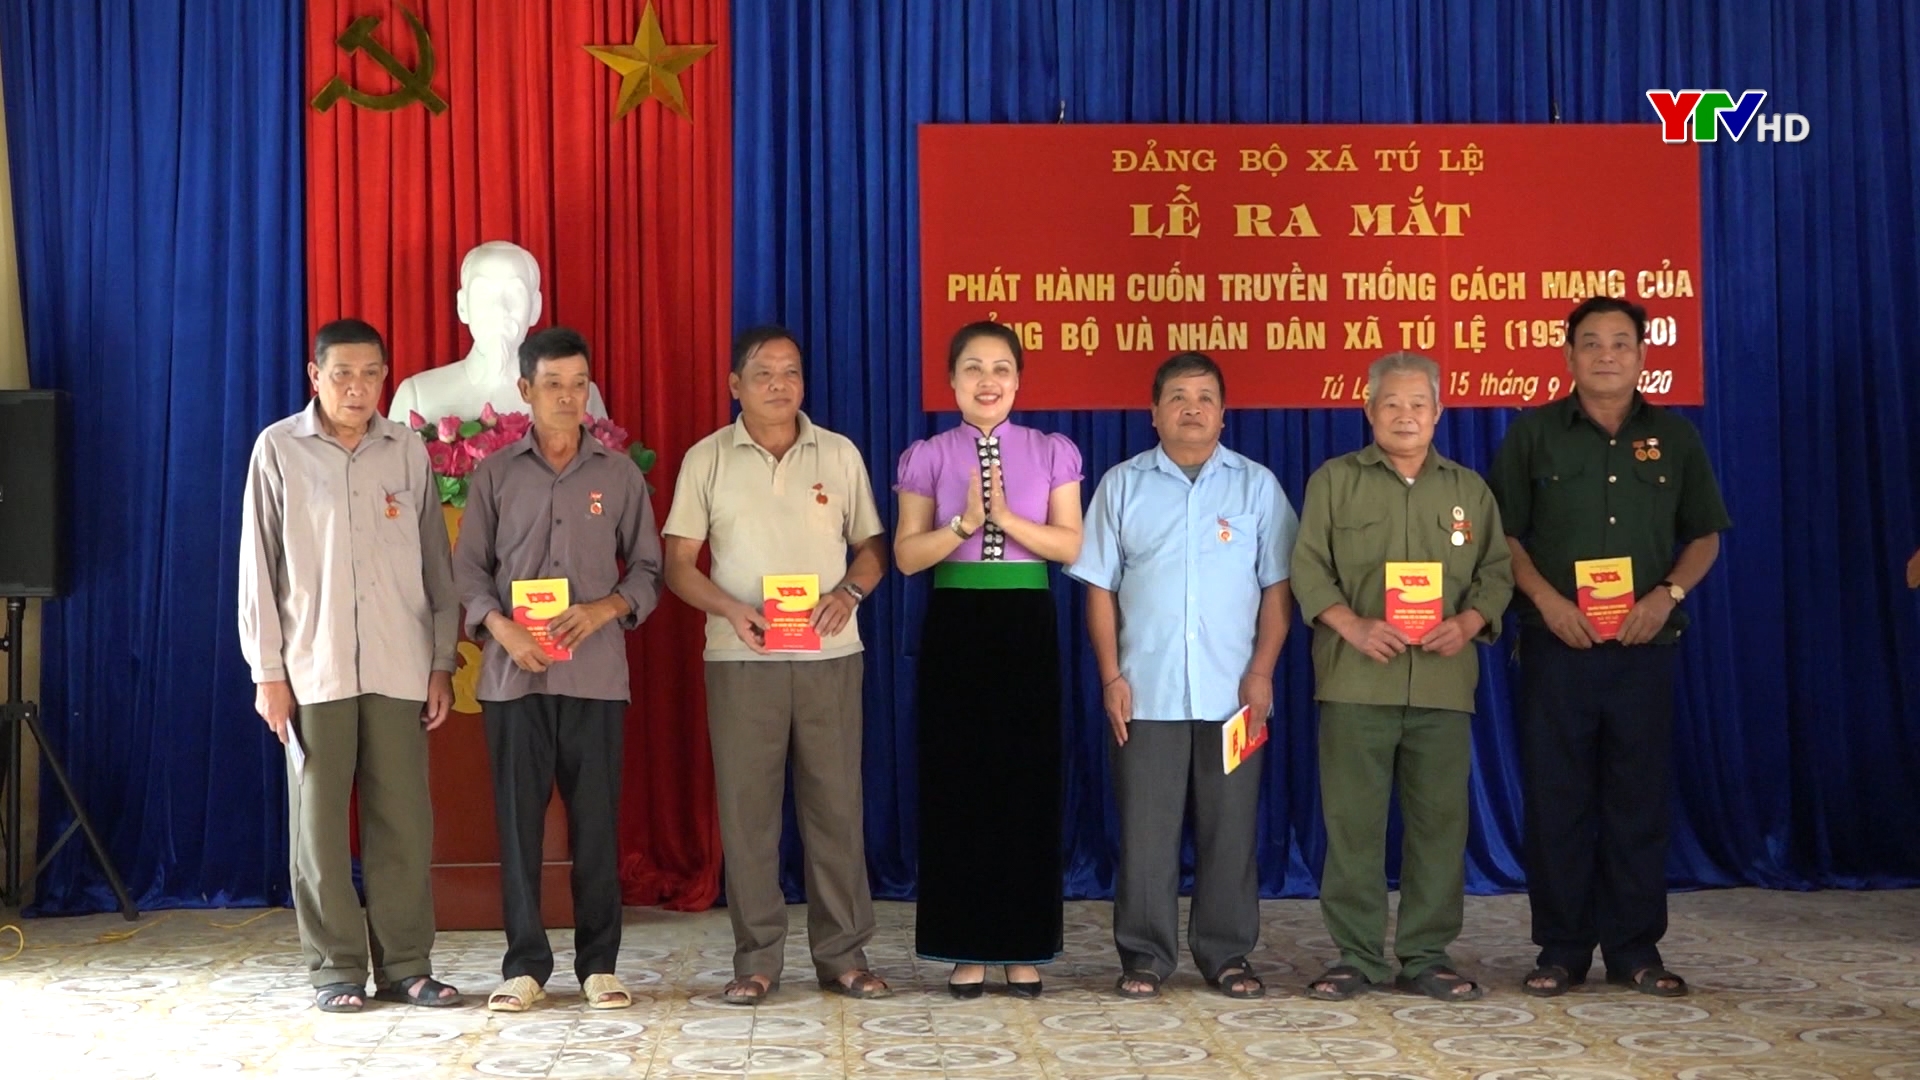 Đảng bộ xã Tú Lệ, huyện Văn Chấn phát hành cuốn truyền thống cách mạng của Đảng bộ xã